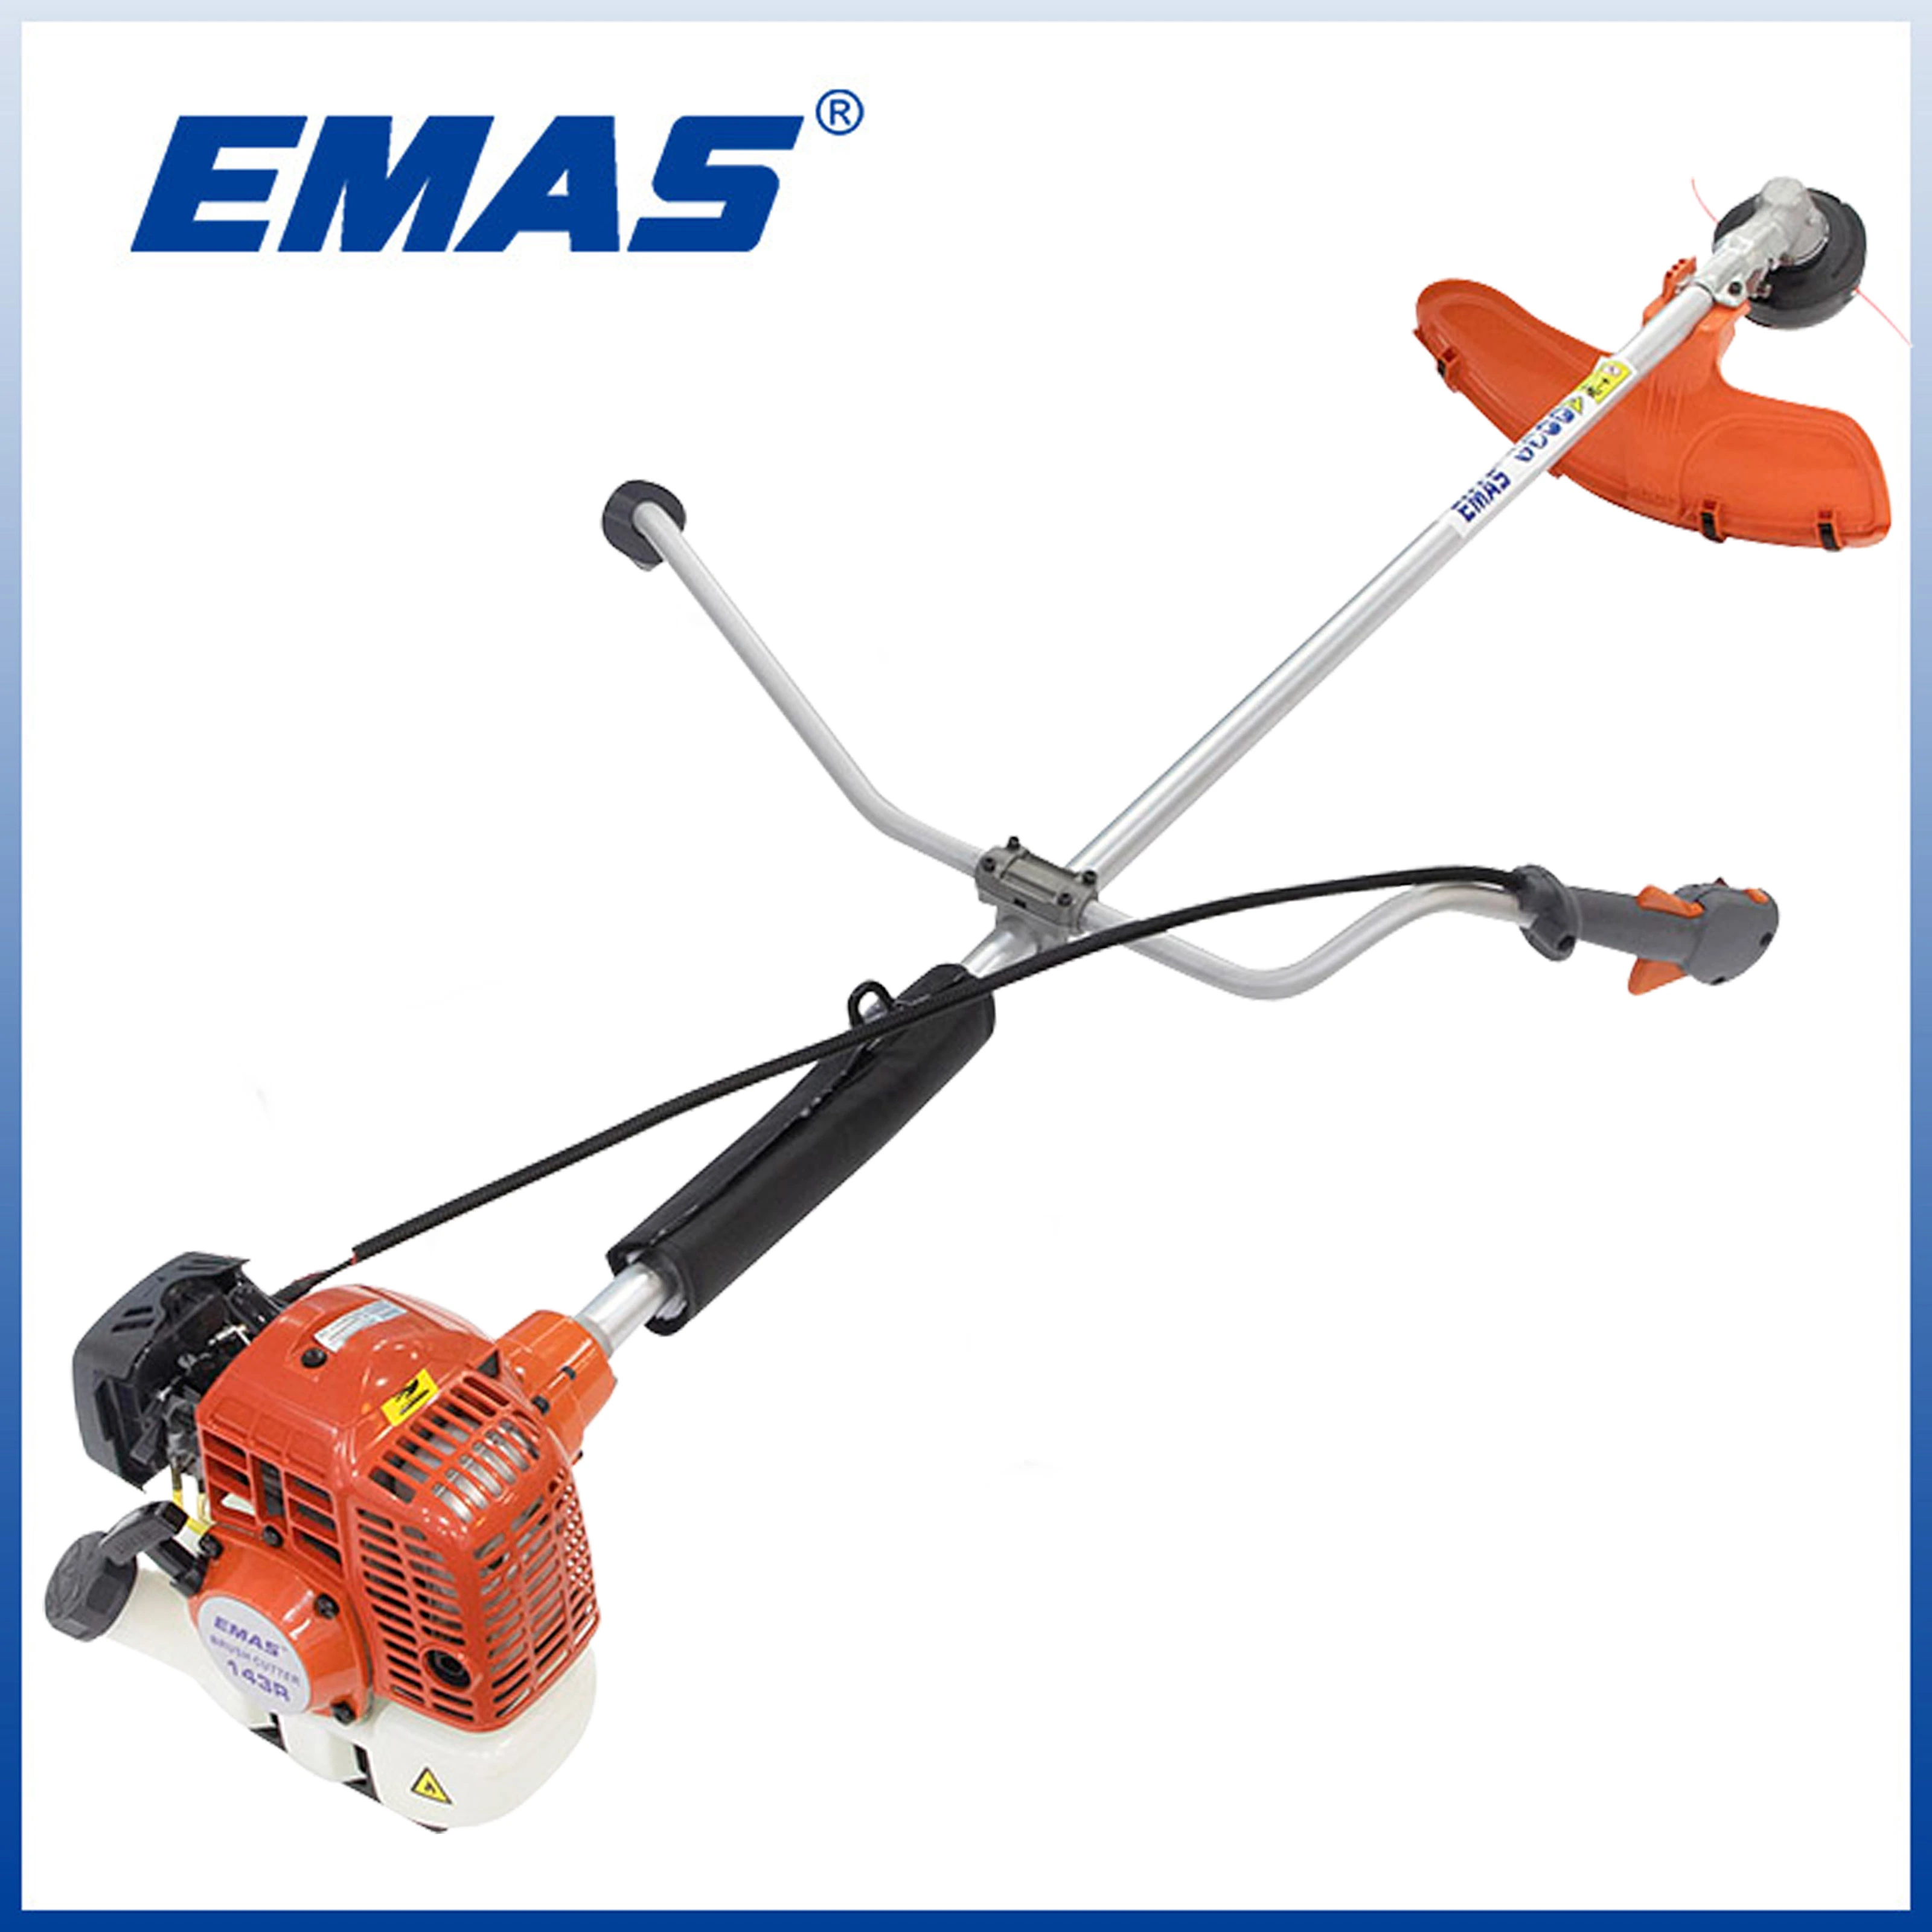 Aparador de relva profissional EMAS novo modelo Eh143r com cortador de escova 43 cc